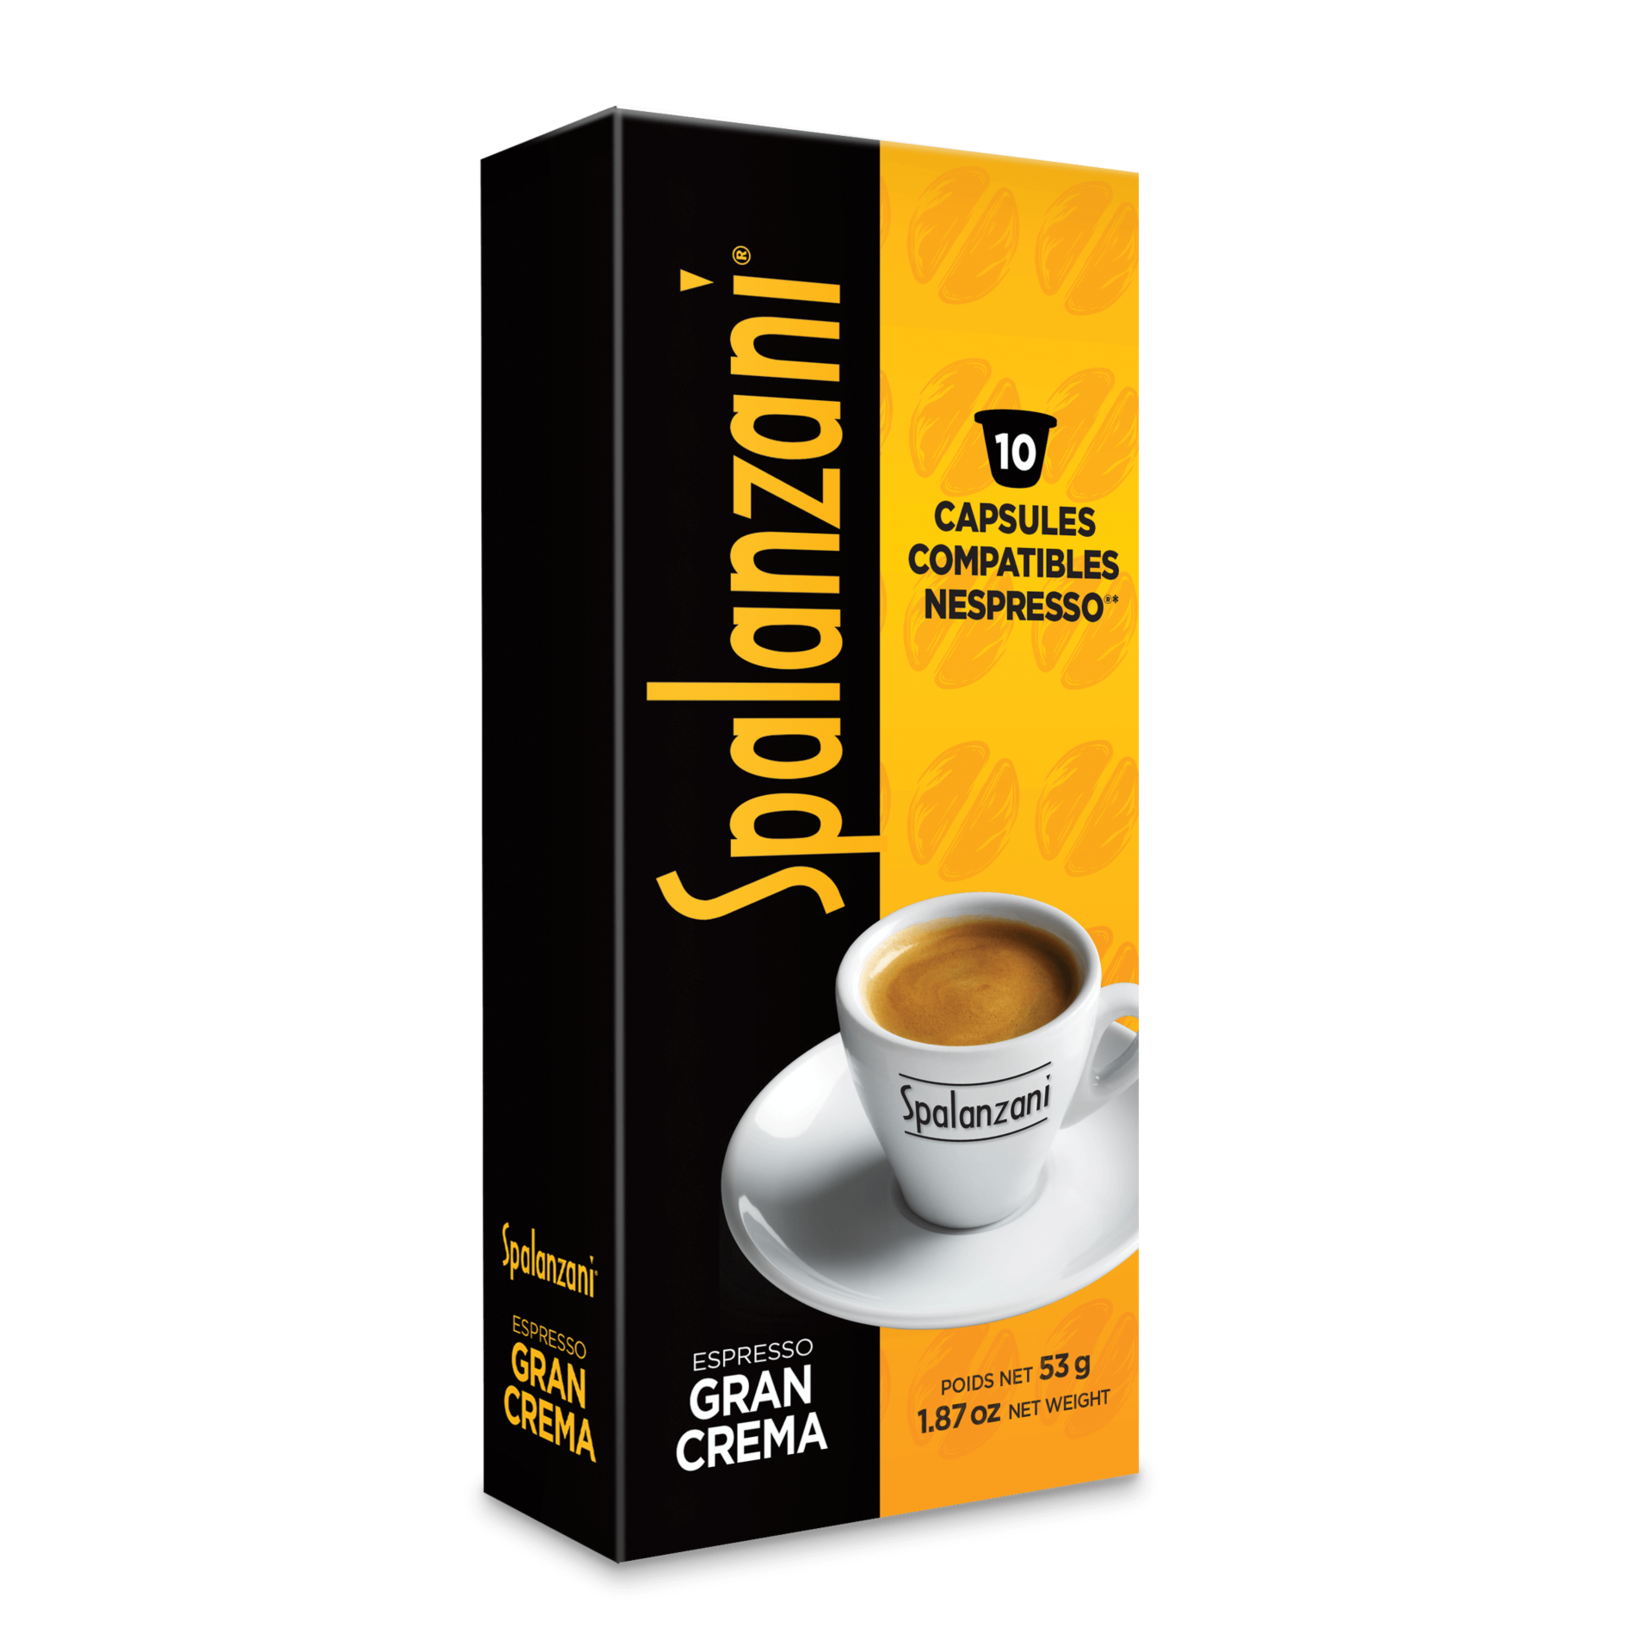 SPALANZANI Capsules Compatibles Nespresso (10)